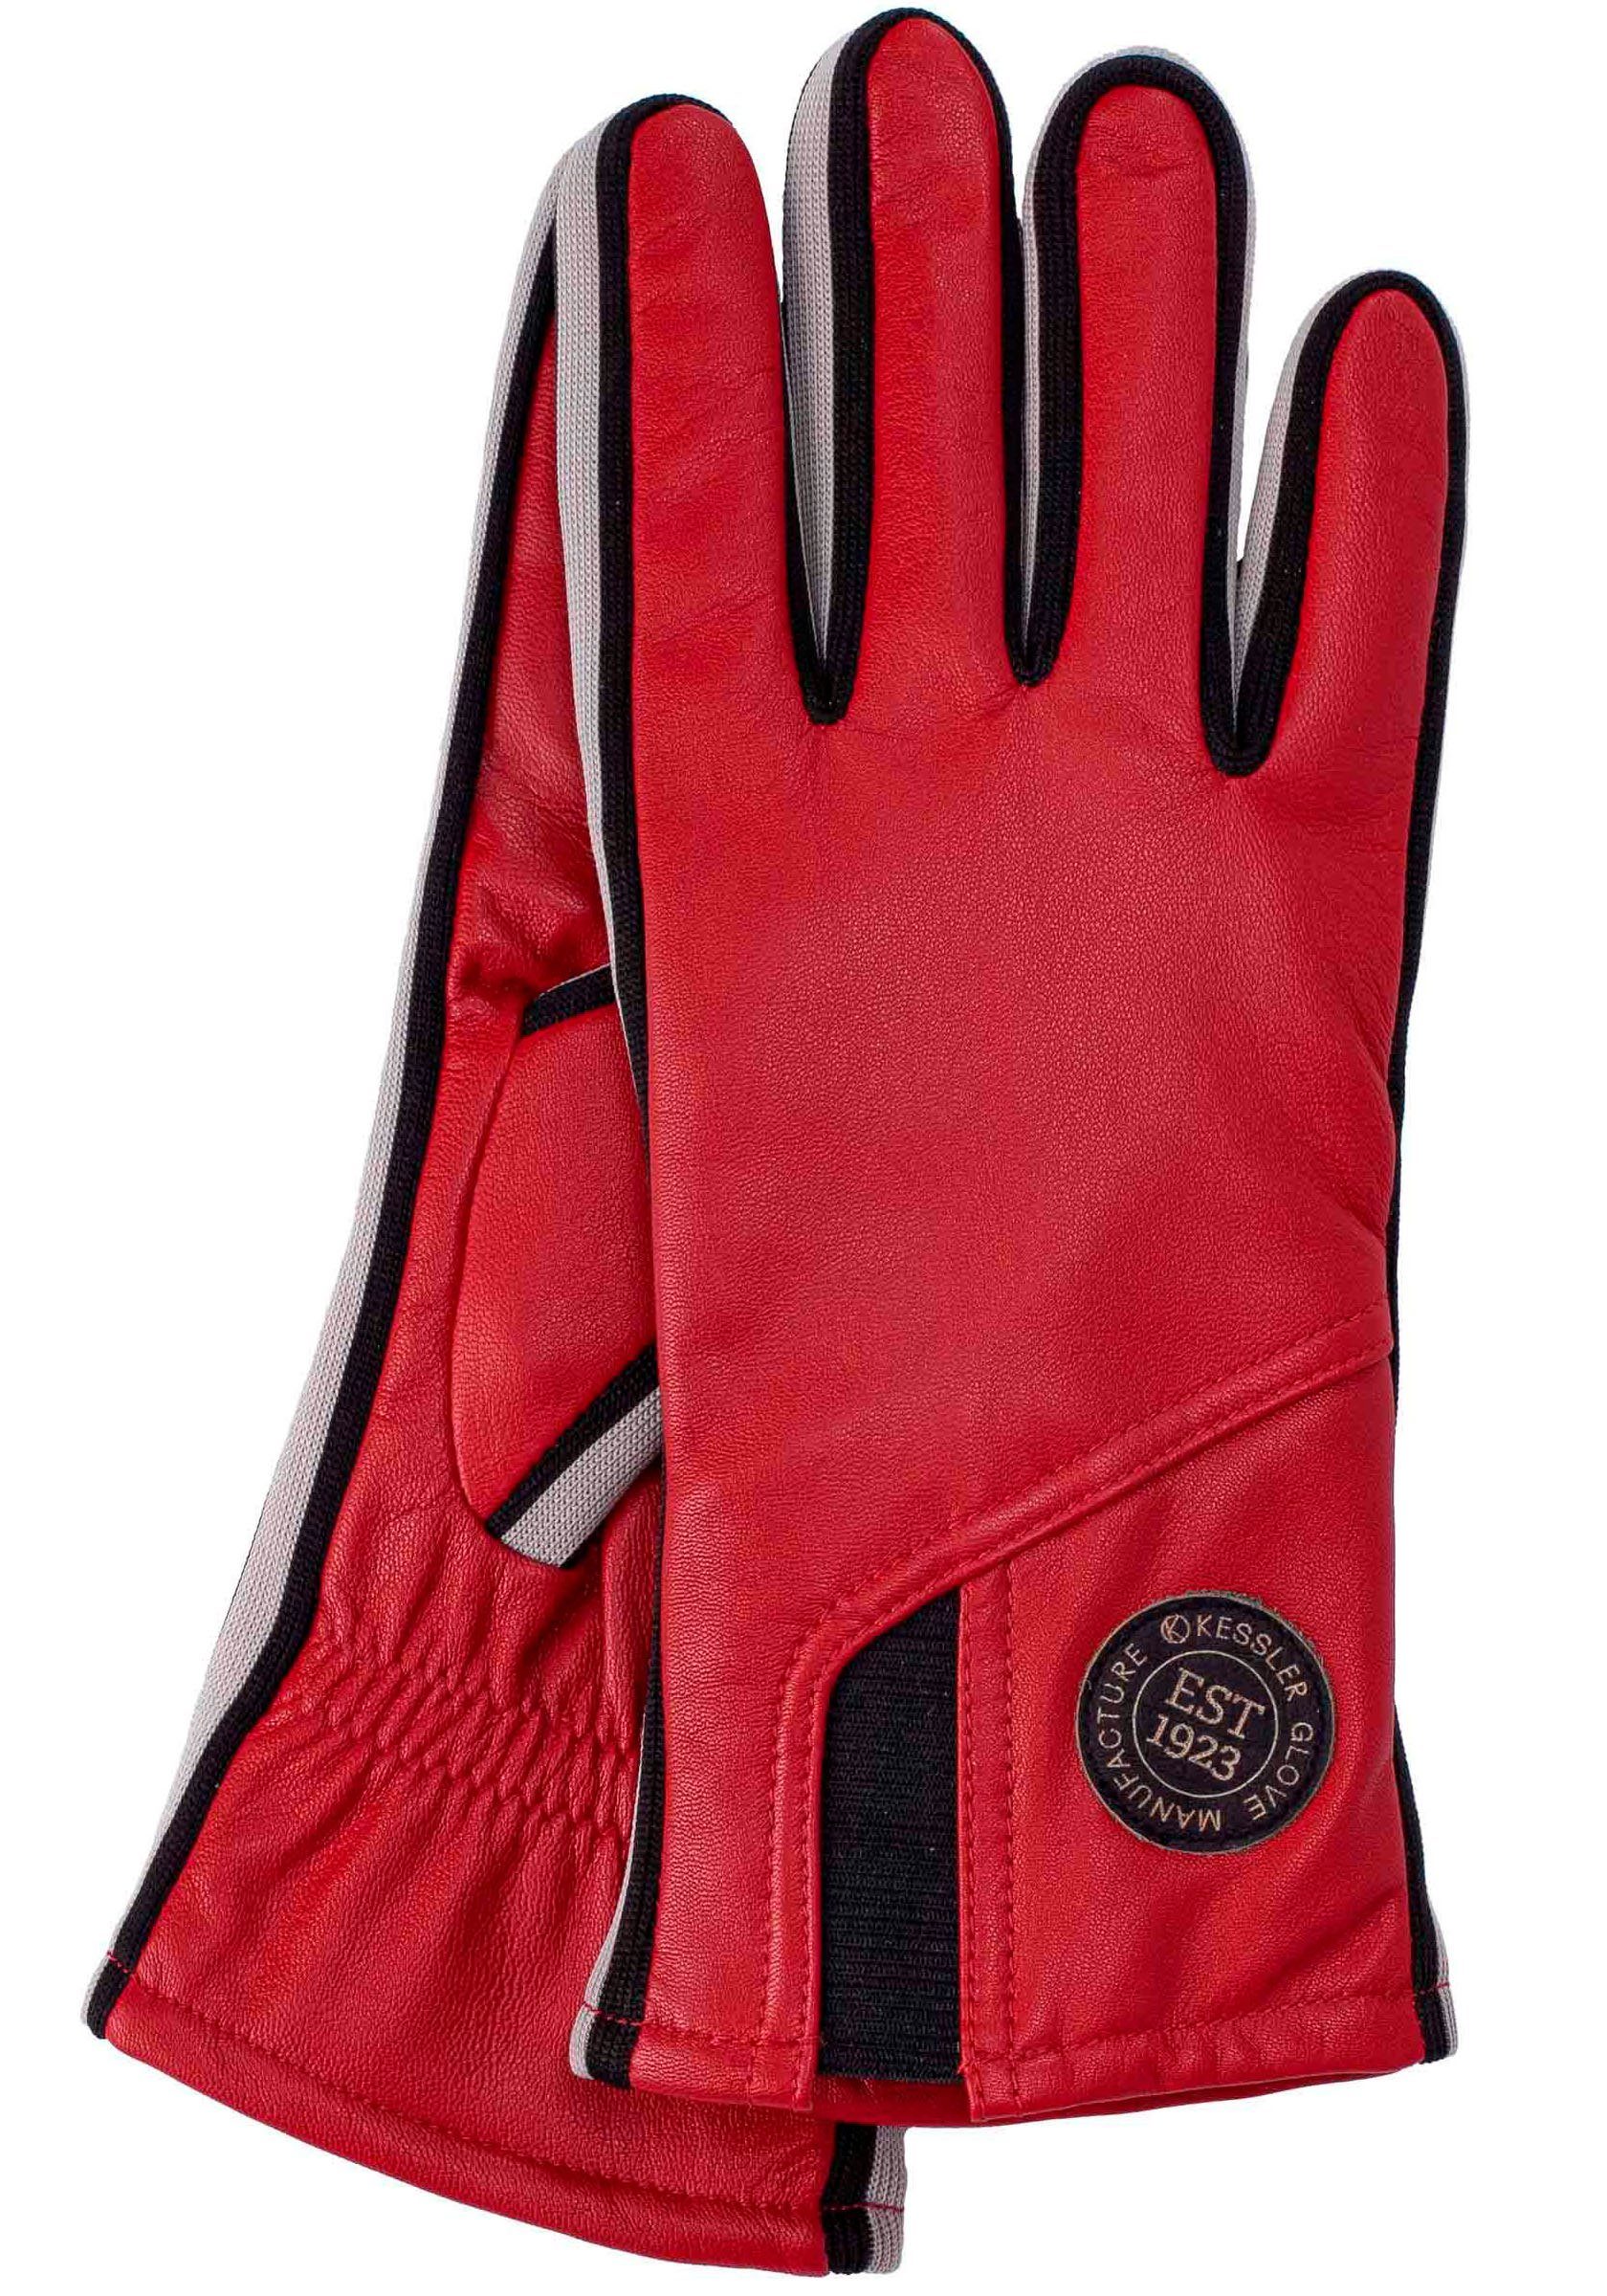 KESSLER Lederhandschuhe Gil Touch sportliches Design im Sneaker- Look mit Touchfunktion crimson | Handschuhe